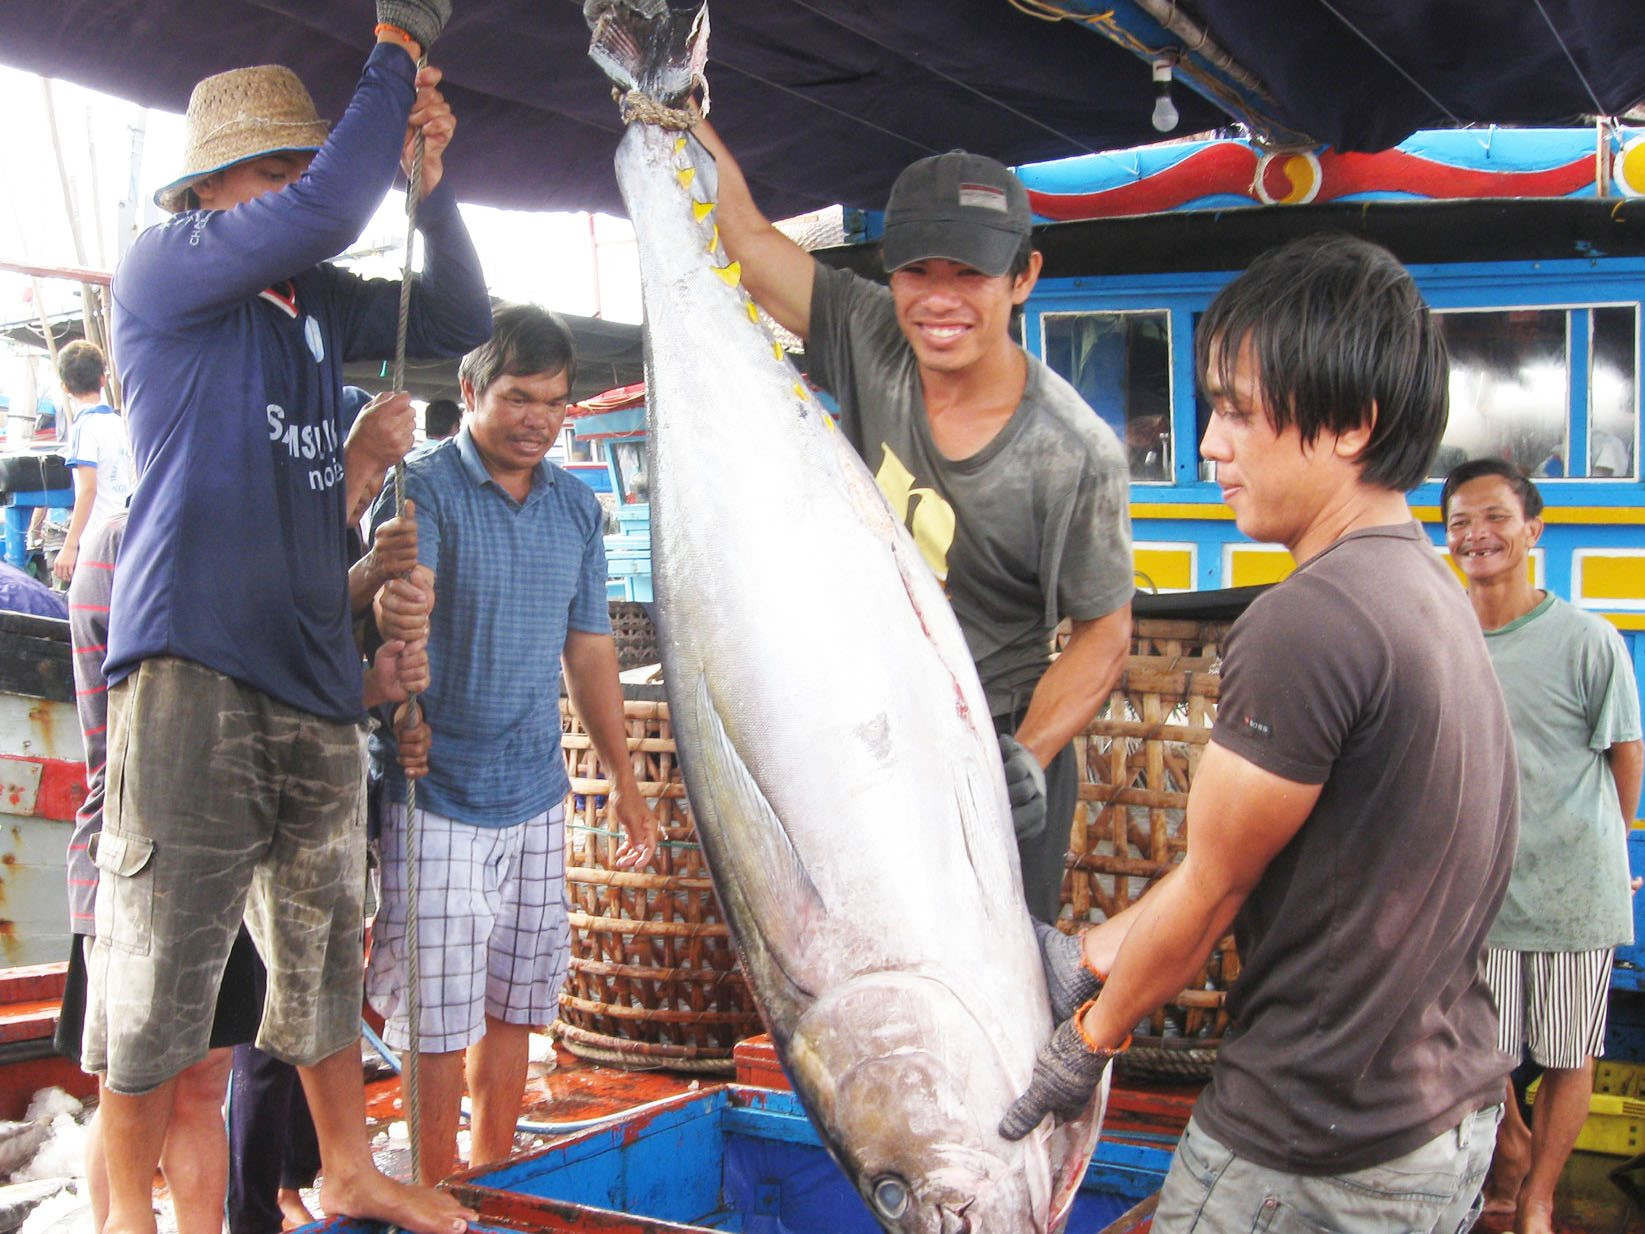 Trong 4 tháng, hai nước Mỹ Latin chi 12 triệu USD chỉ để mua một loại cá biển của Việt Nam, tăng gần gấp đôi năm ngoái - Ảnh 1.